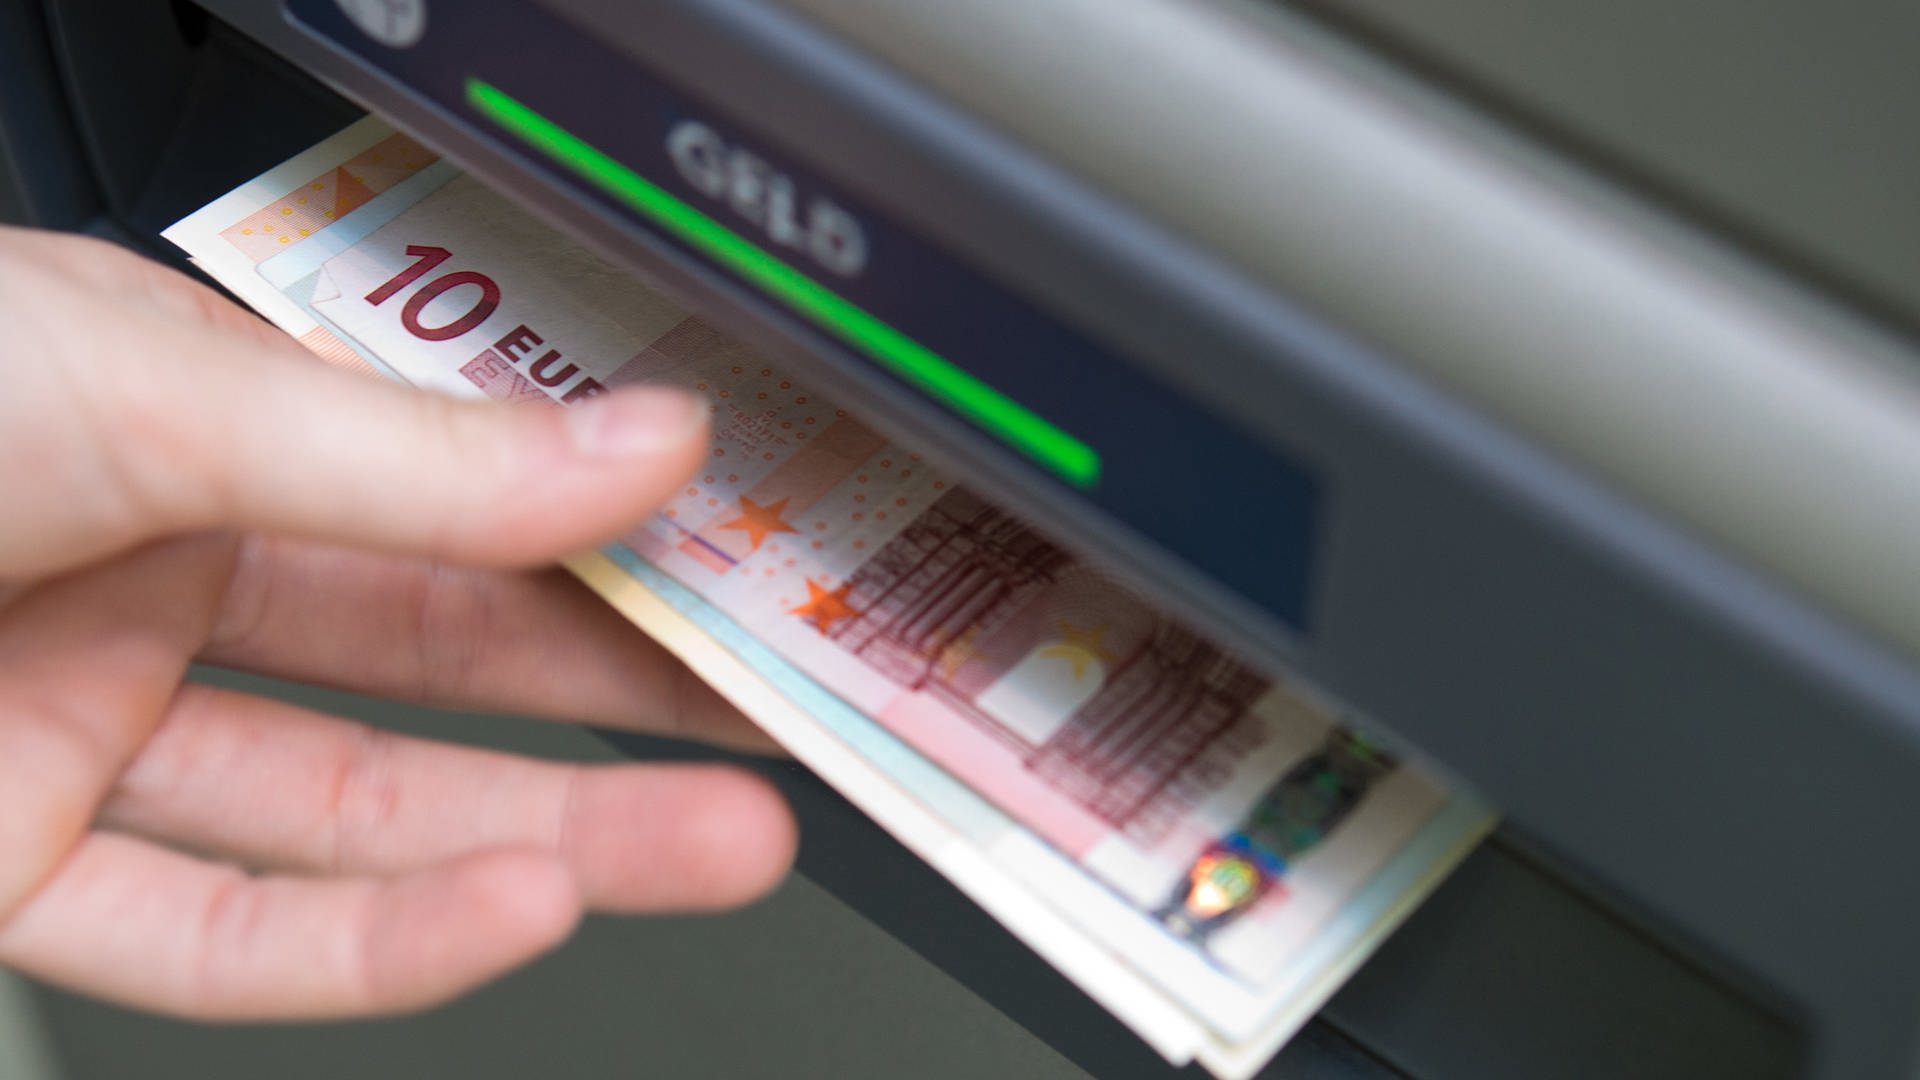 Banken in RLP schränken Zugang zu Geldautomaten ein